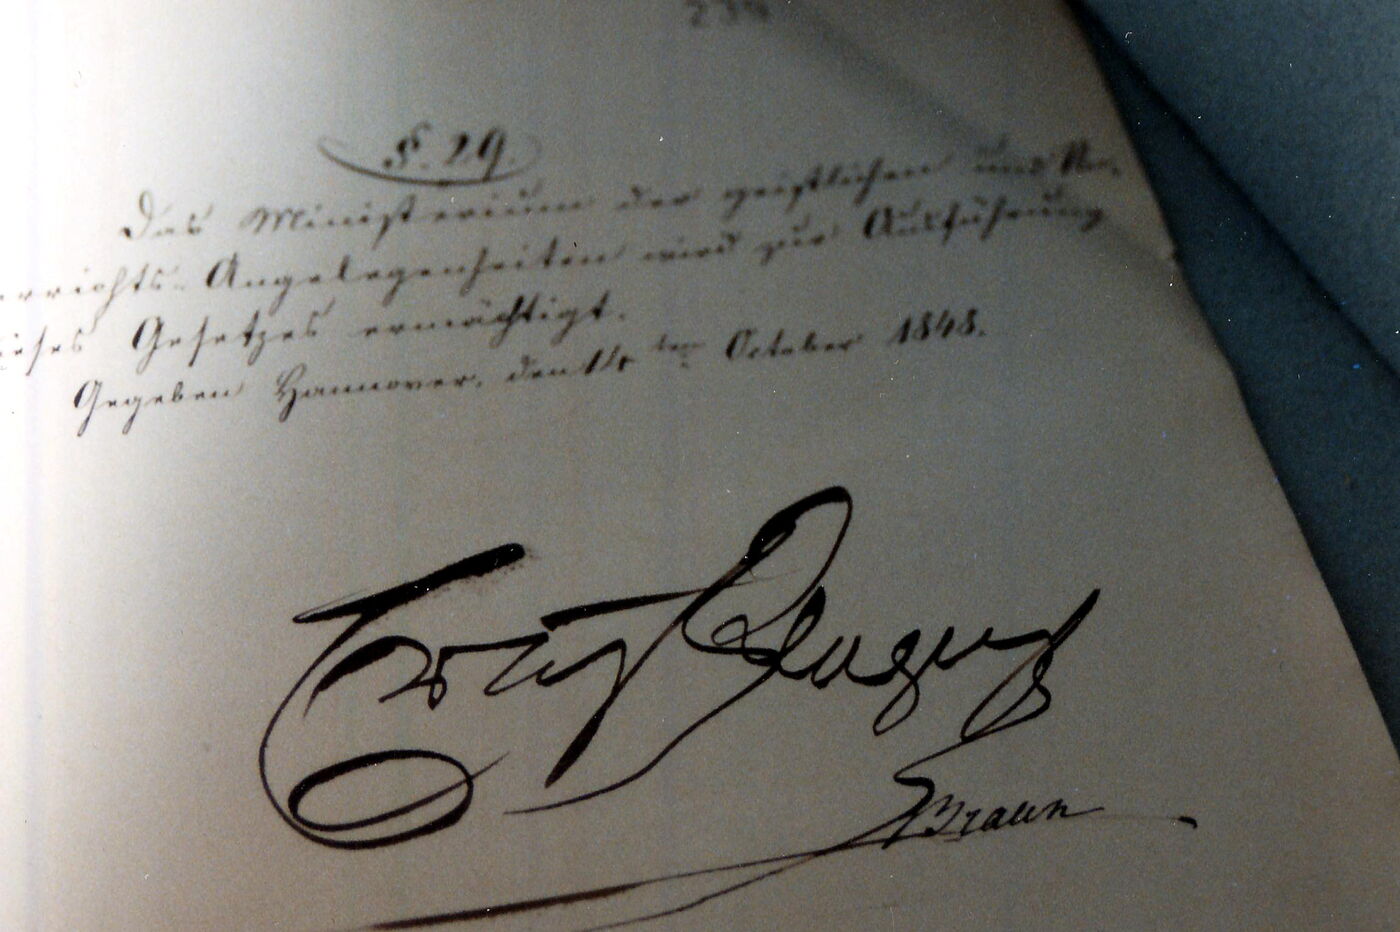 Das Bild zeigt die Unterschrift von König Ernst August auf einem weißen Blatt Papier.